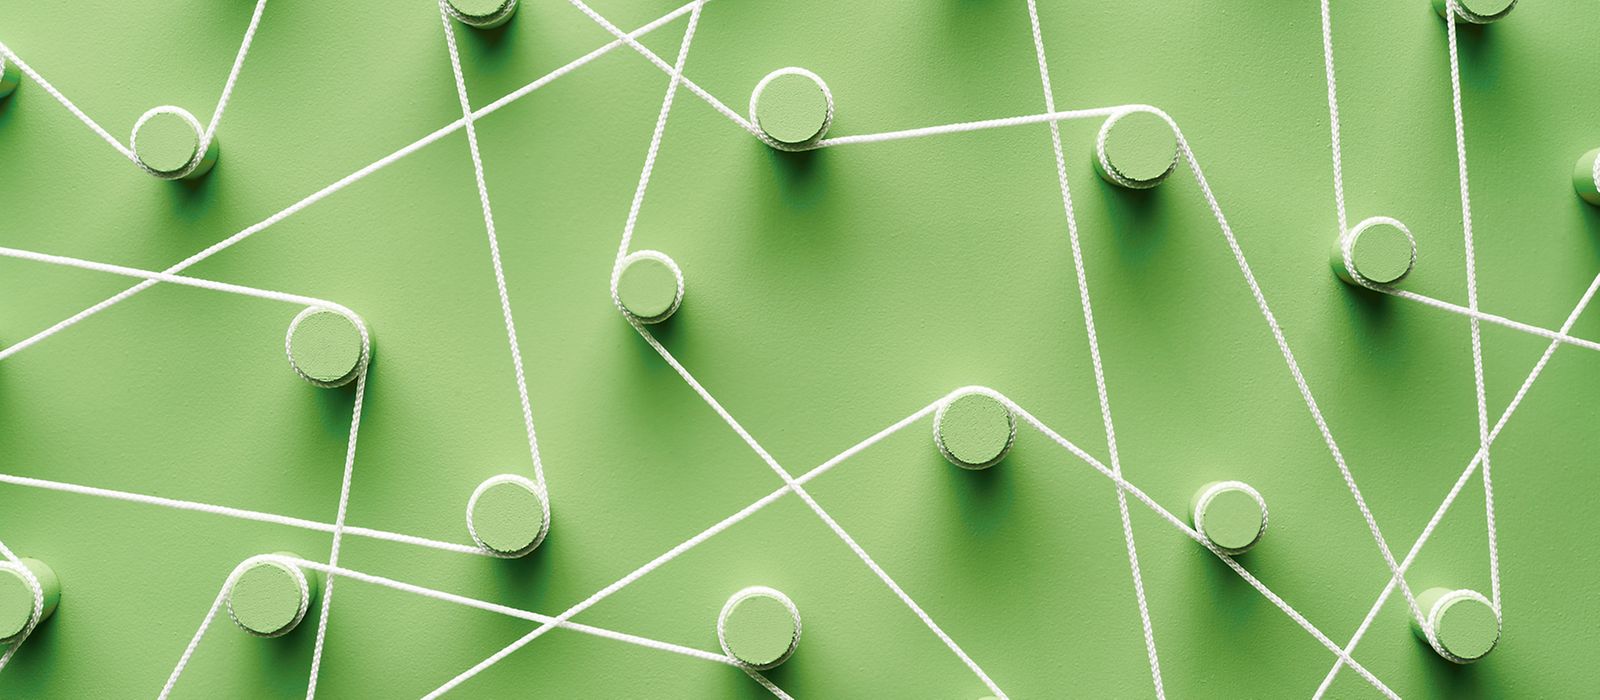 Bild zeigt: Grüne Haken sind durch ein Band miteinander verbunden.